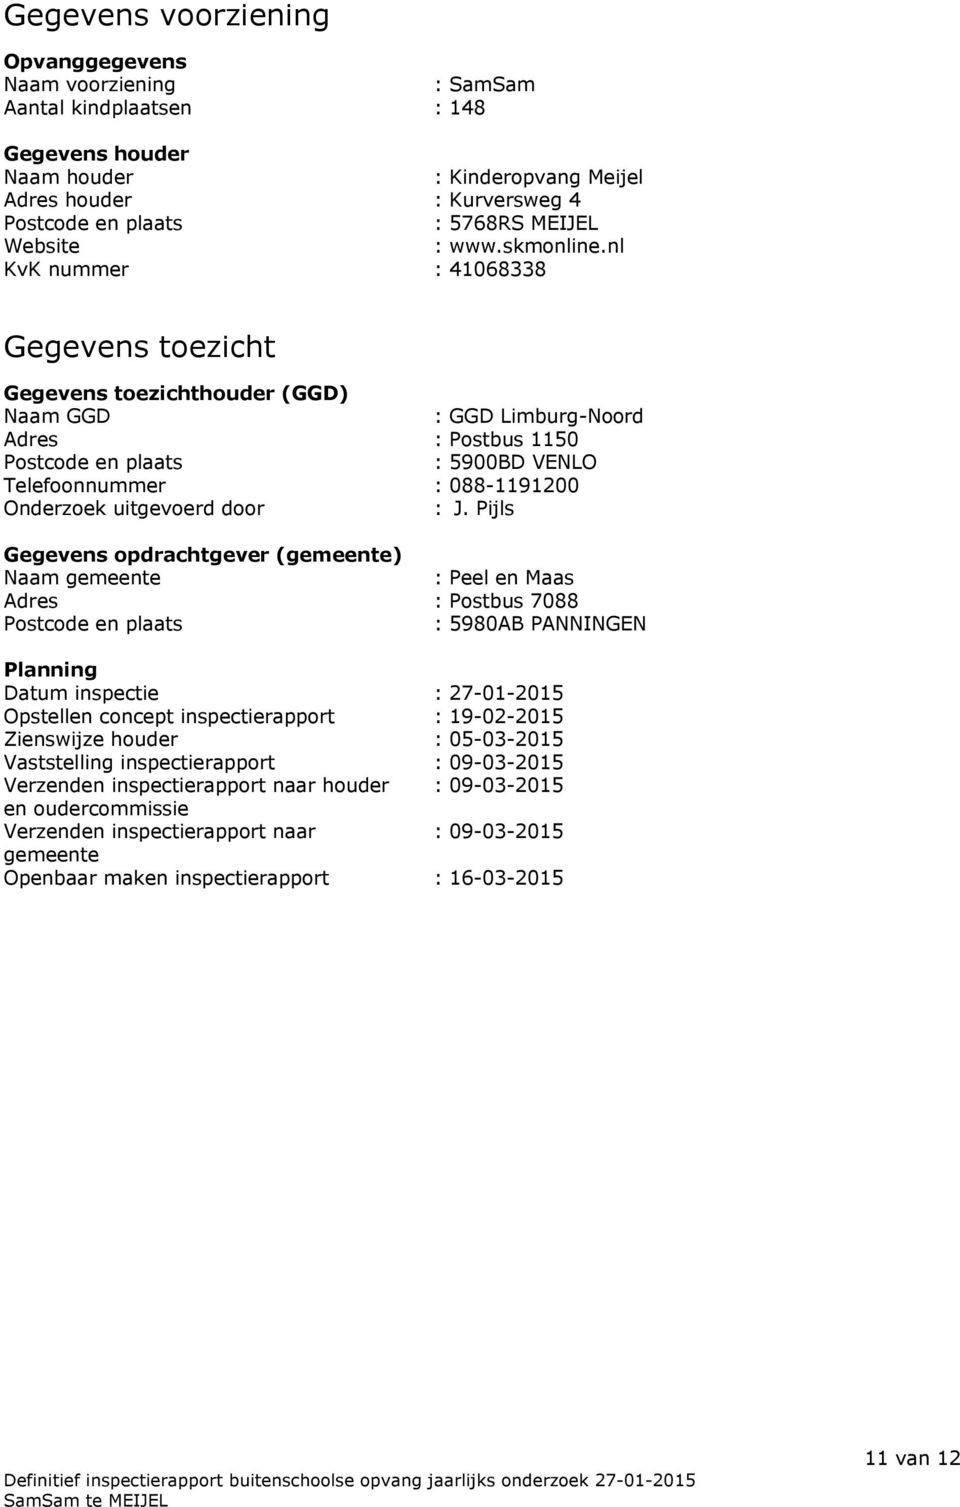 nl KvK nummer : 41068338 Gegevens toezicht Gegevens toezichthouder (GGD) Naam GGD : GGD Limburg-Noord Adres : Postbus 1150 Postcode en plaats : 5900BD VENLO Telefoonnummer : 088-1191200 Onderzoek